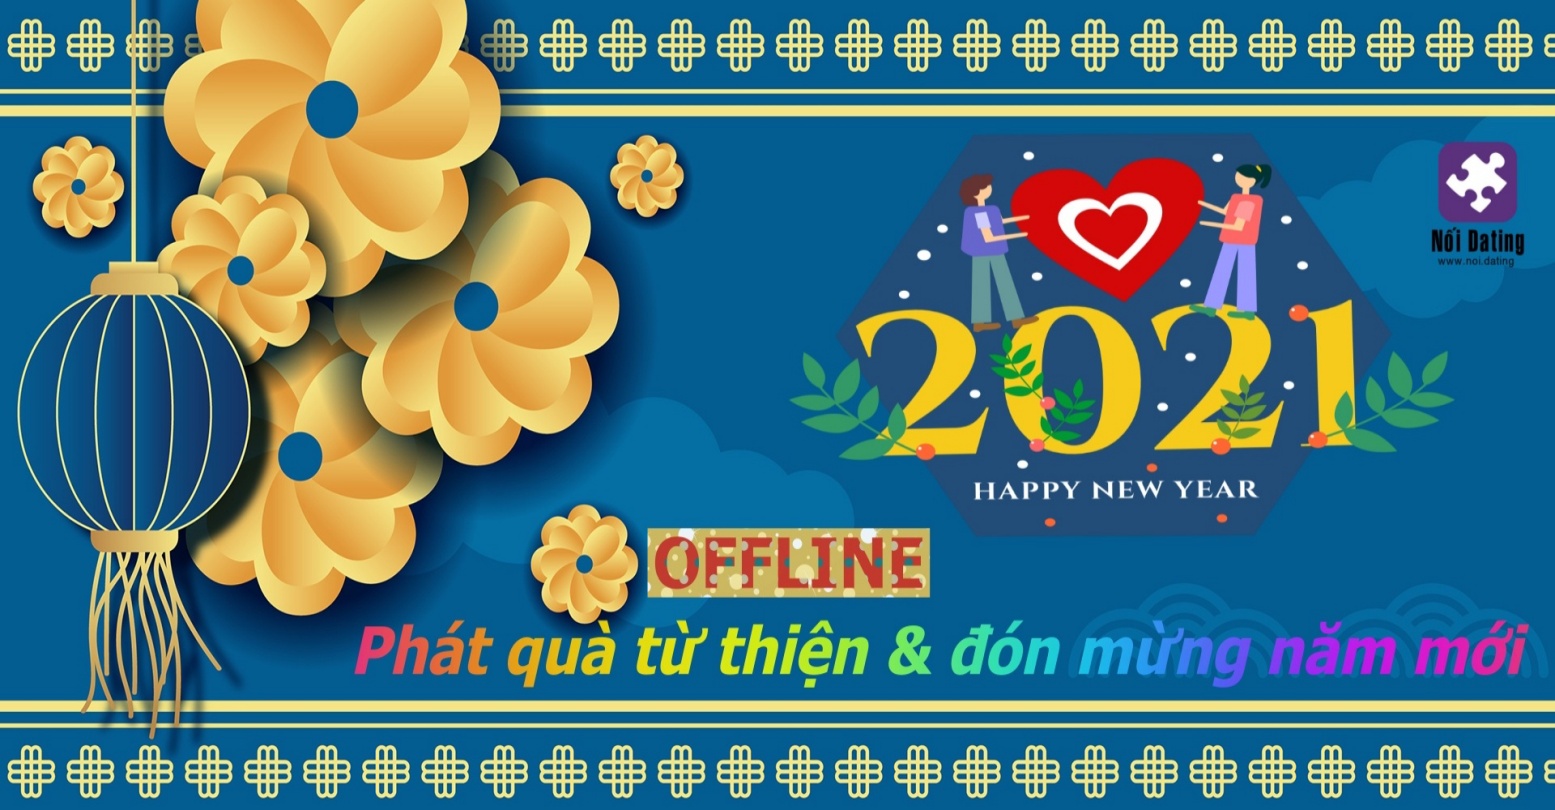 OFFLINE ĐẶC BIỆT - Tặng quà từ thiện & đón mừng năm mới 2021 (31/12/20)